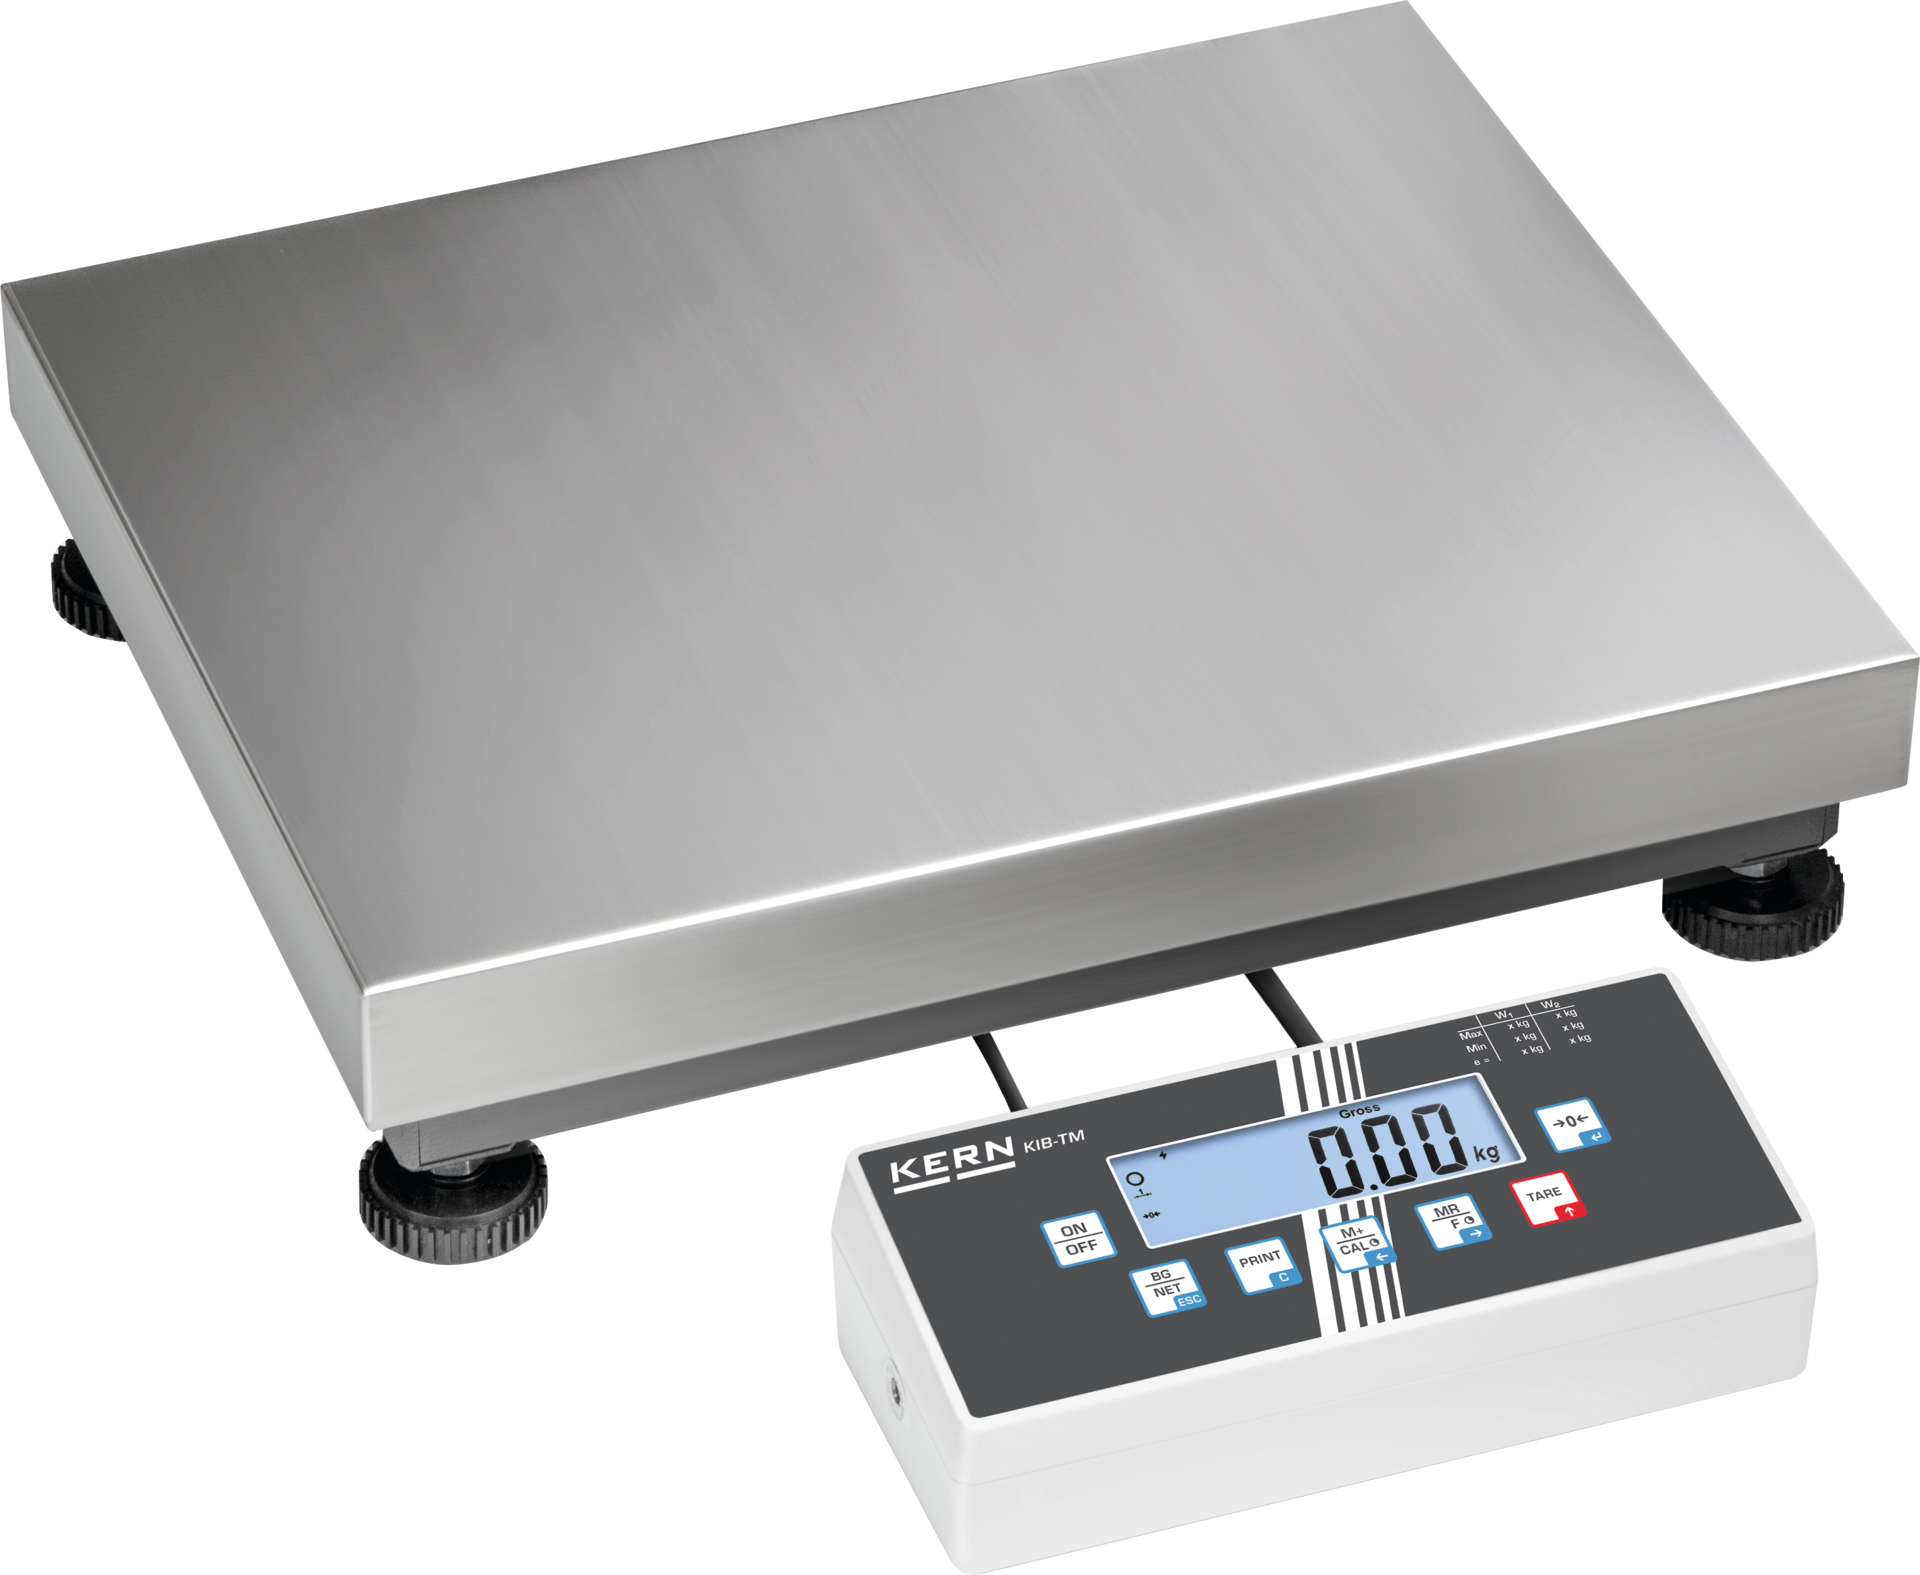 Plattformwaage IOC Edelstahl eichfähig Wägeplatte 800x600mm WB300/600kg Abl. 100/200g